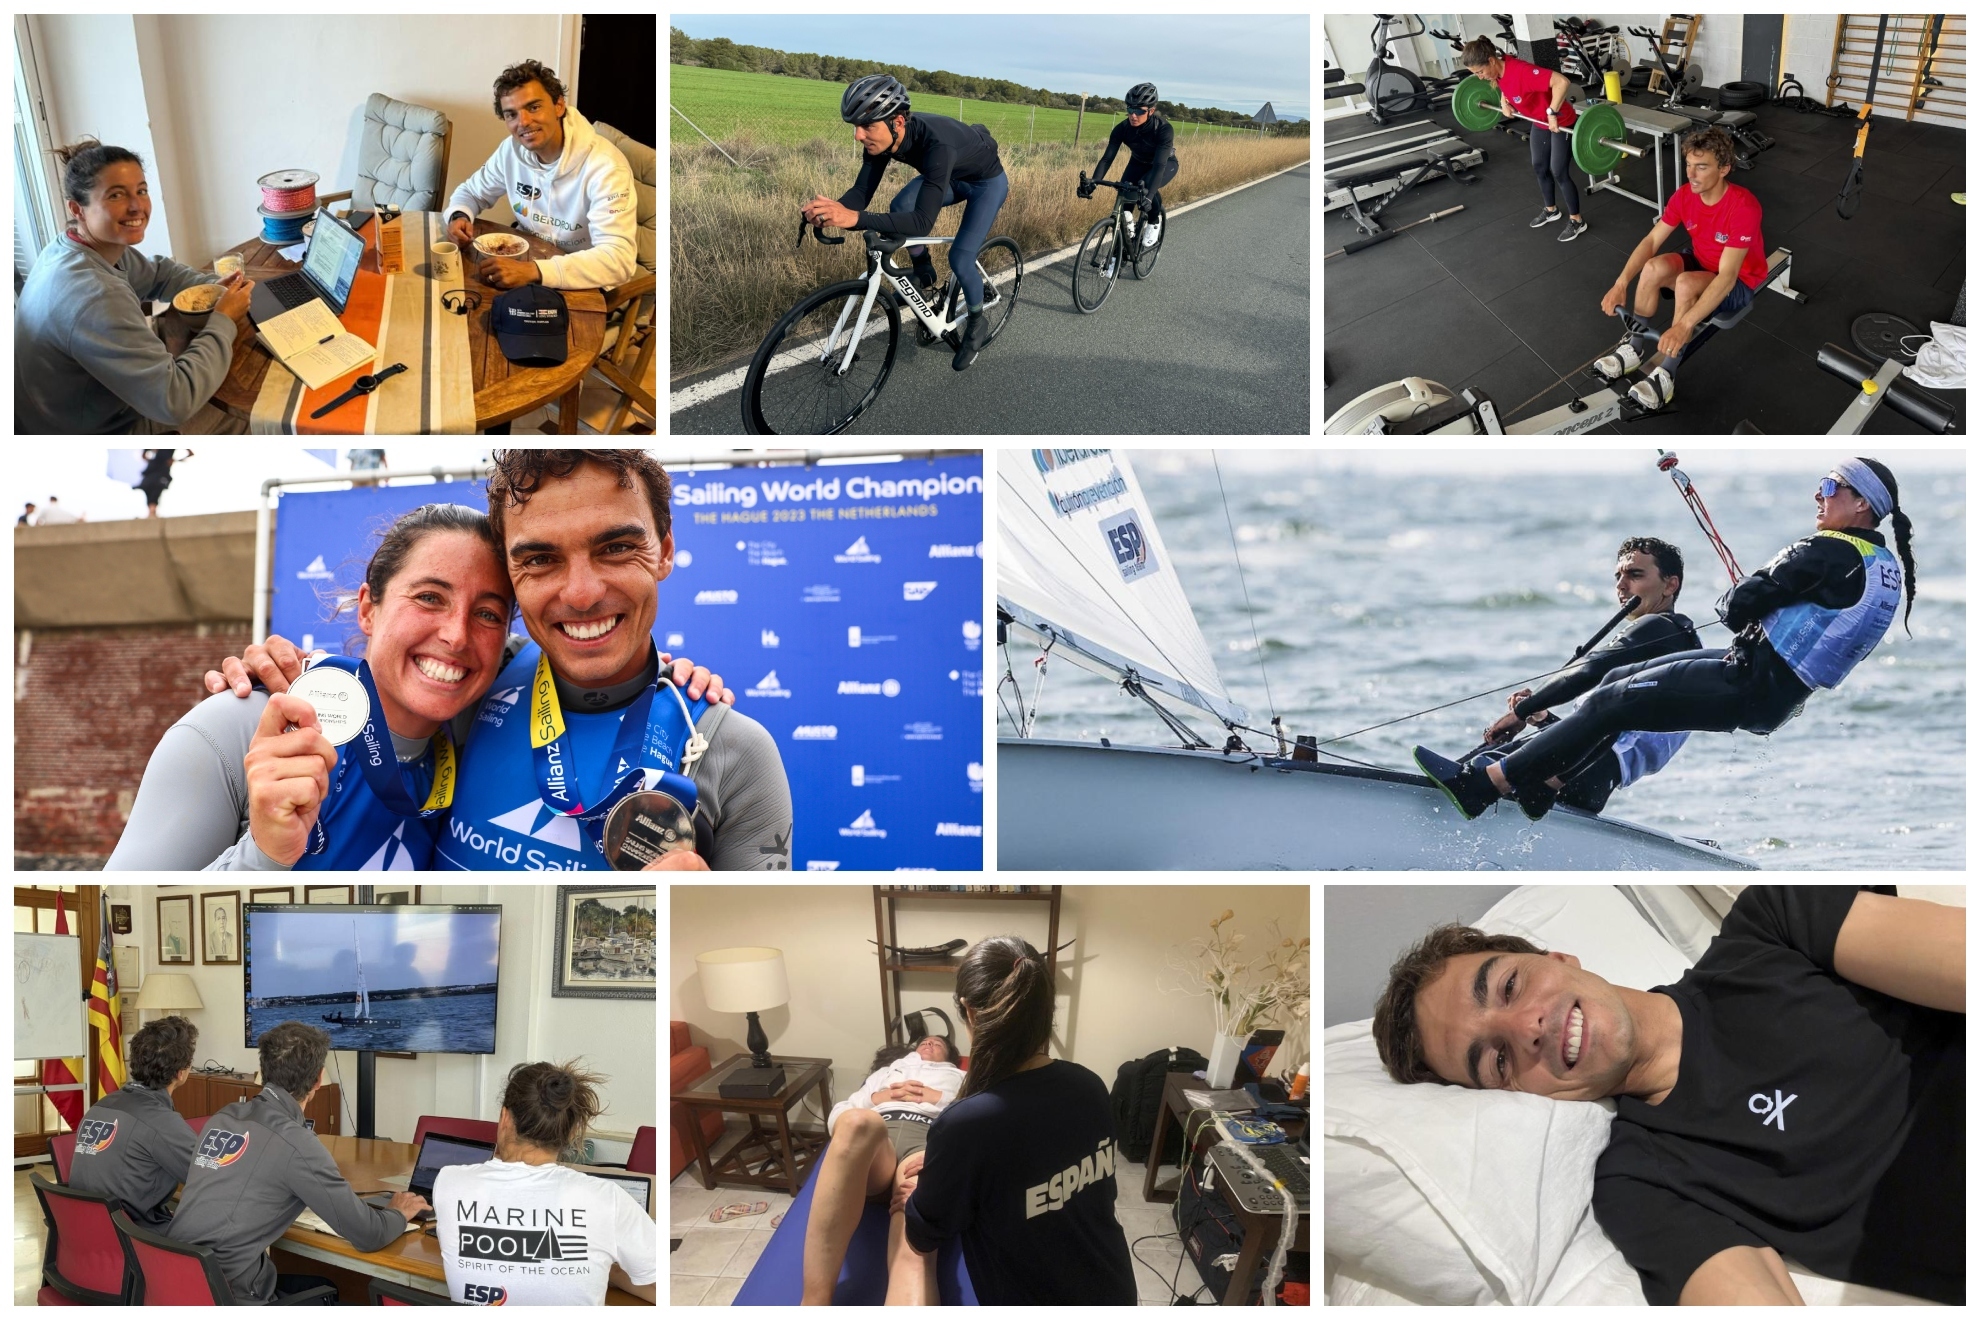 Xammar y Brugman, rumbo a la medalla: ciclismo, mindfulness y todo lo que hacen además de navegar